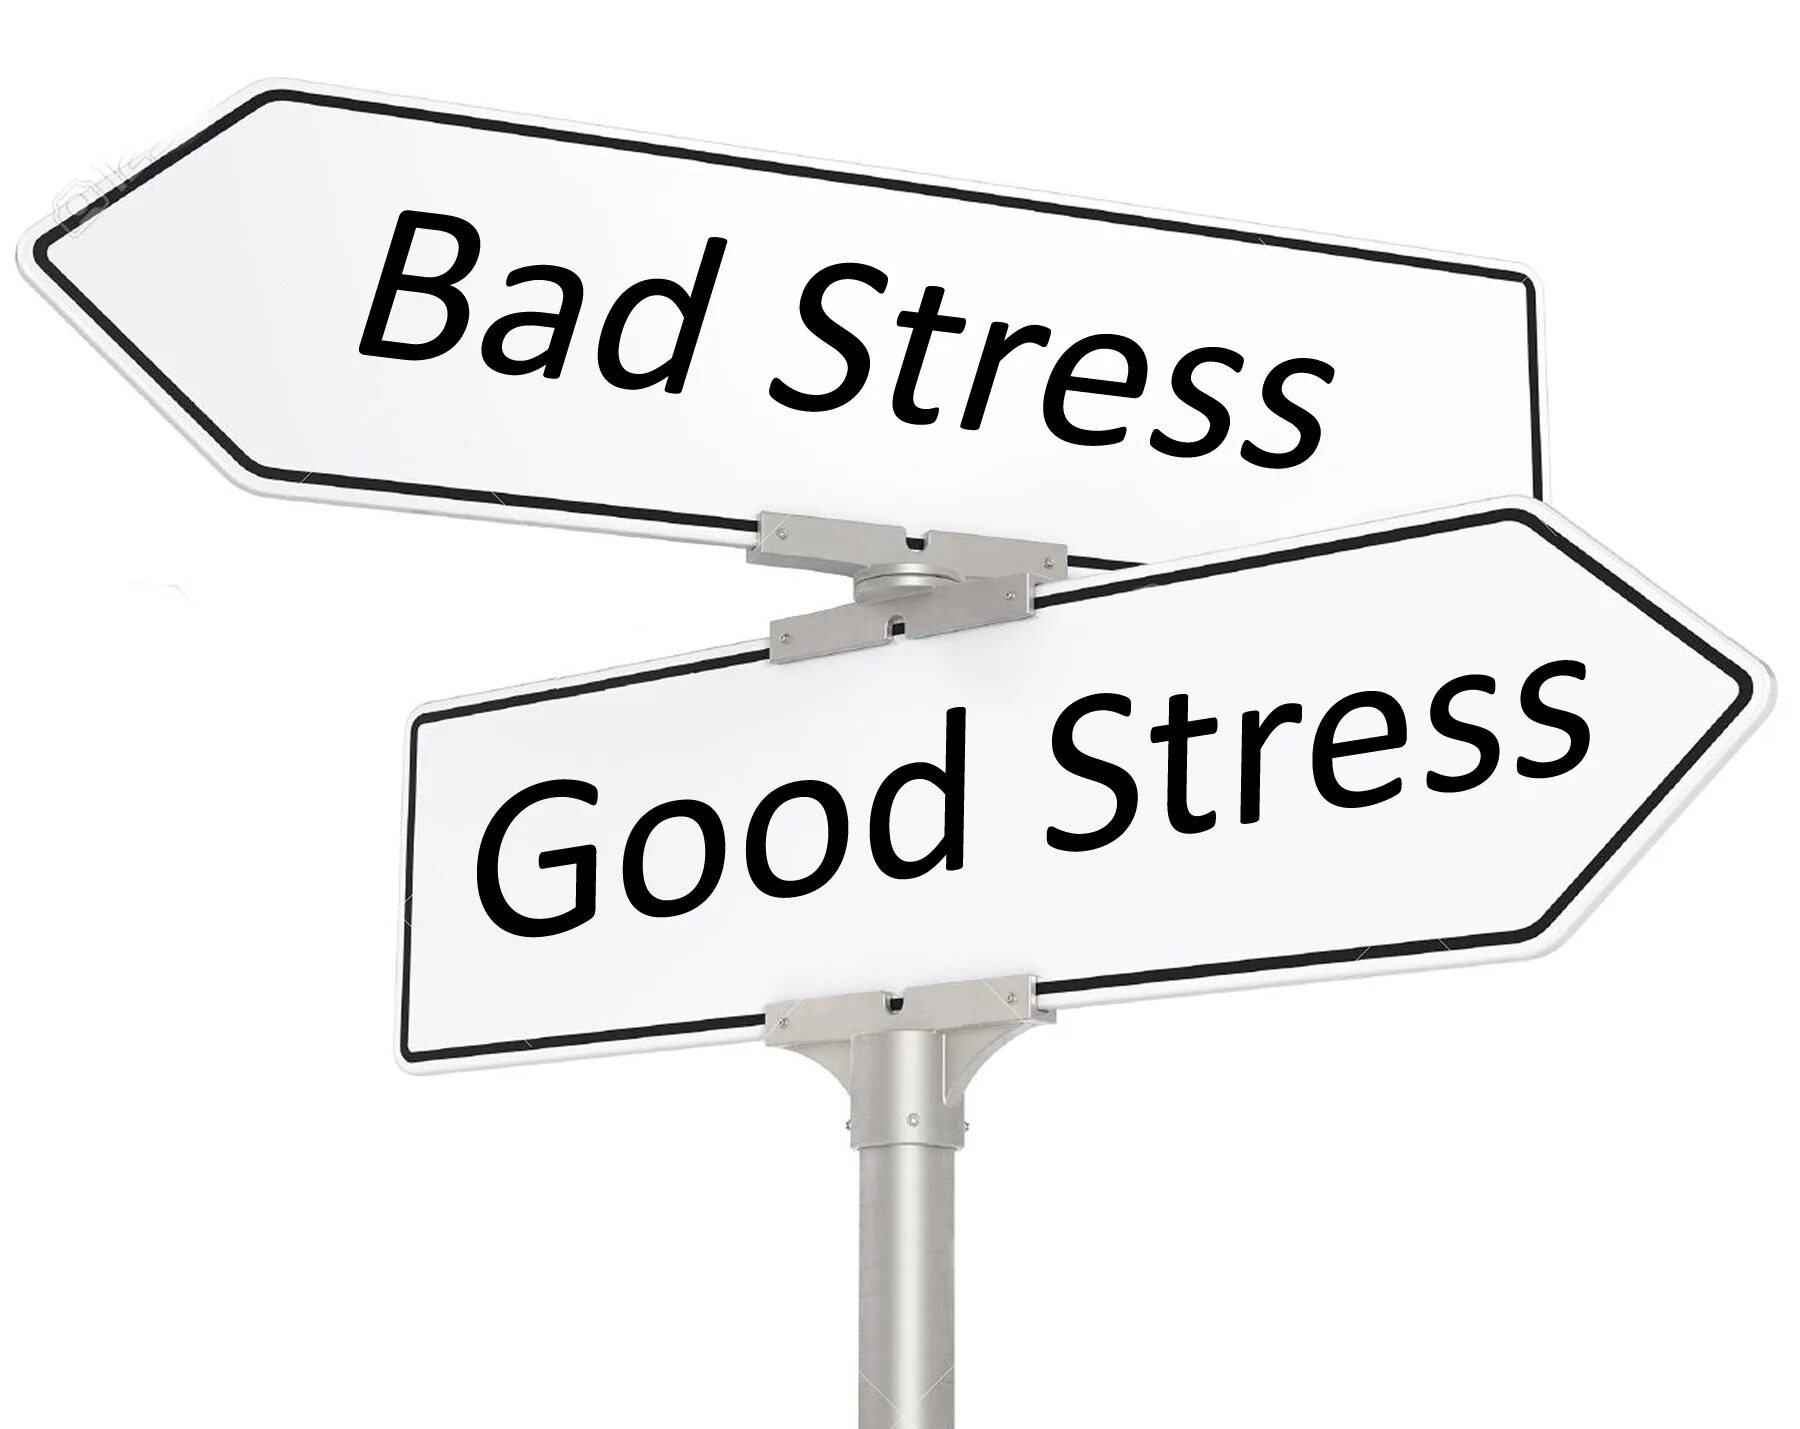 Work badly. Стресс. Bad stress. Good and Bad stress. Эустресс — «положительный» стресс,.